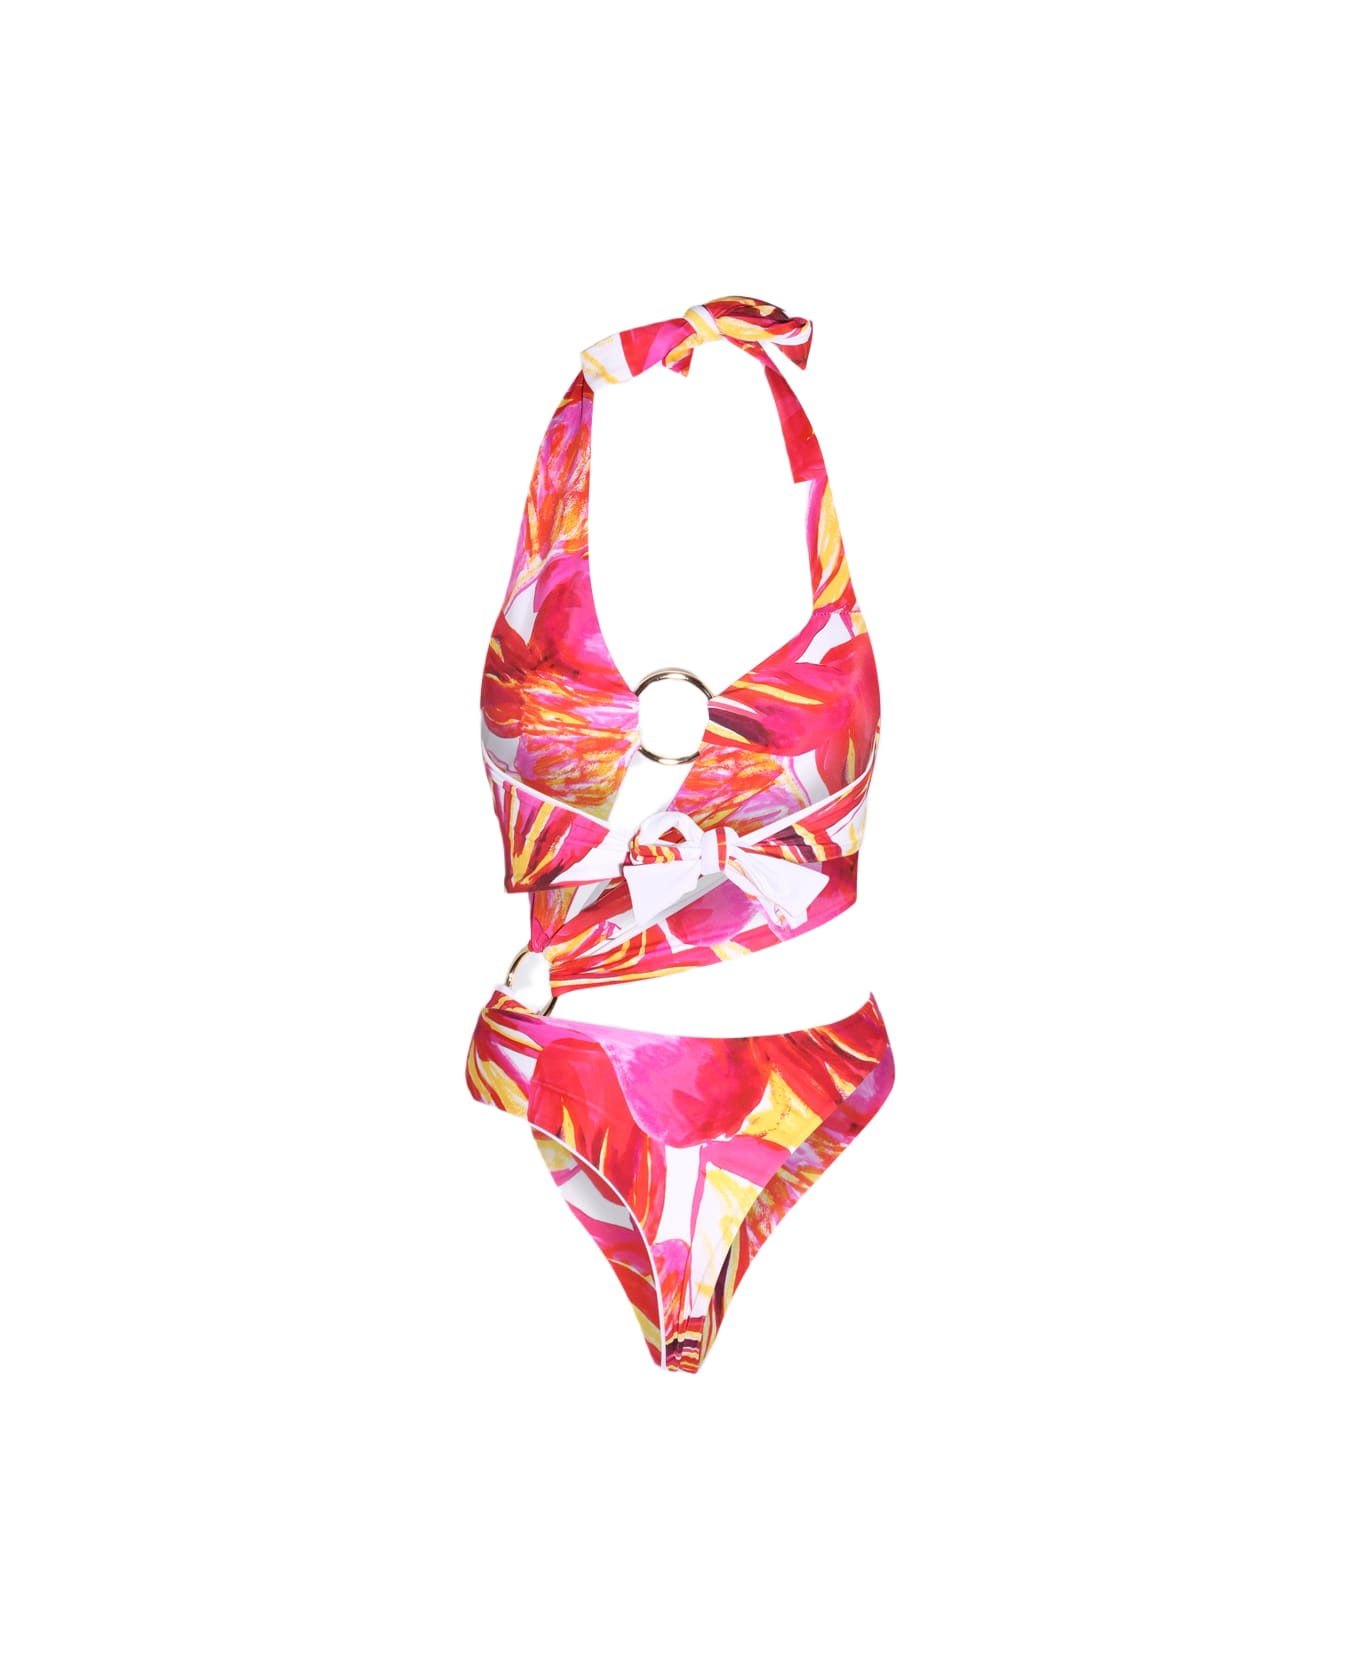 Louisa Ballou Hot Pink One Piece Beachwear - MULTI PINK